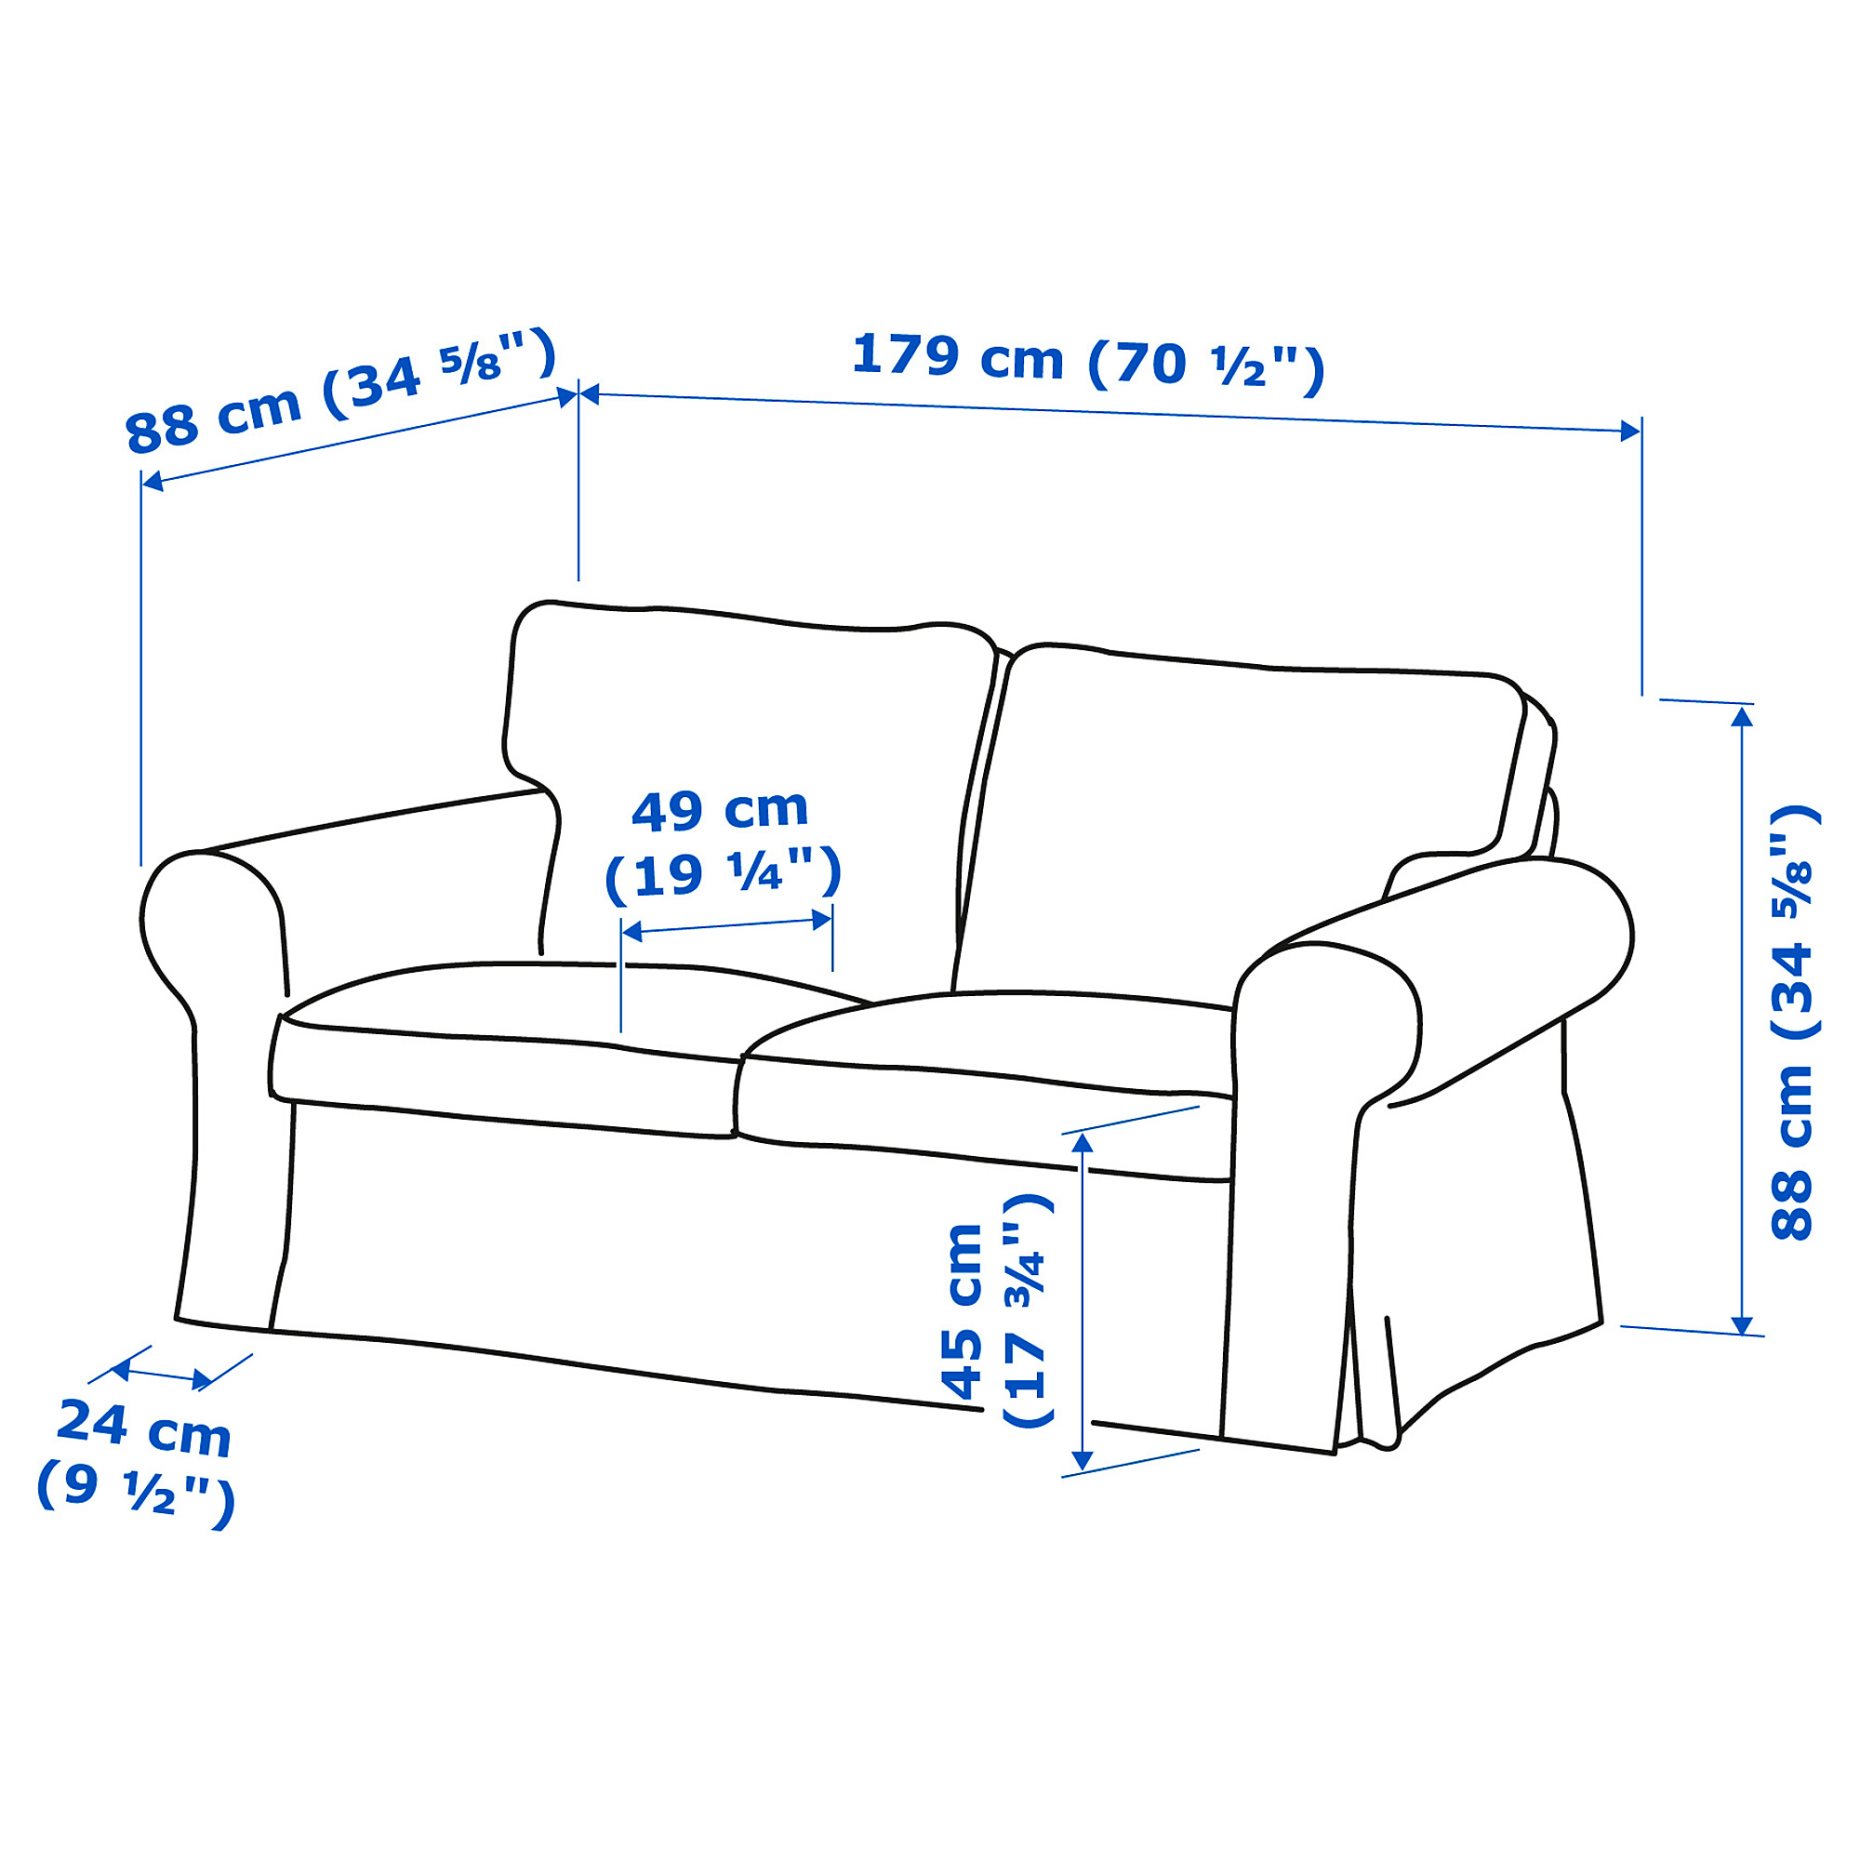 EKTORP, 2-seat sofa, 195.090.22